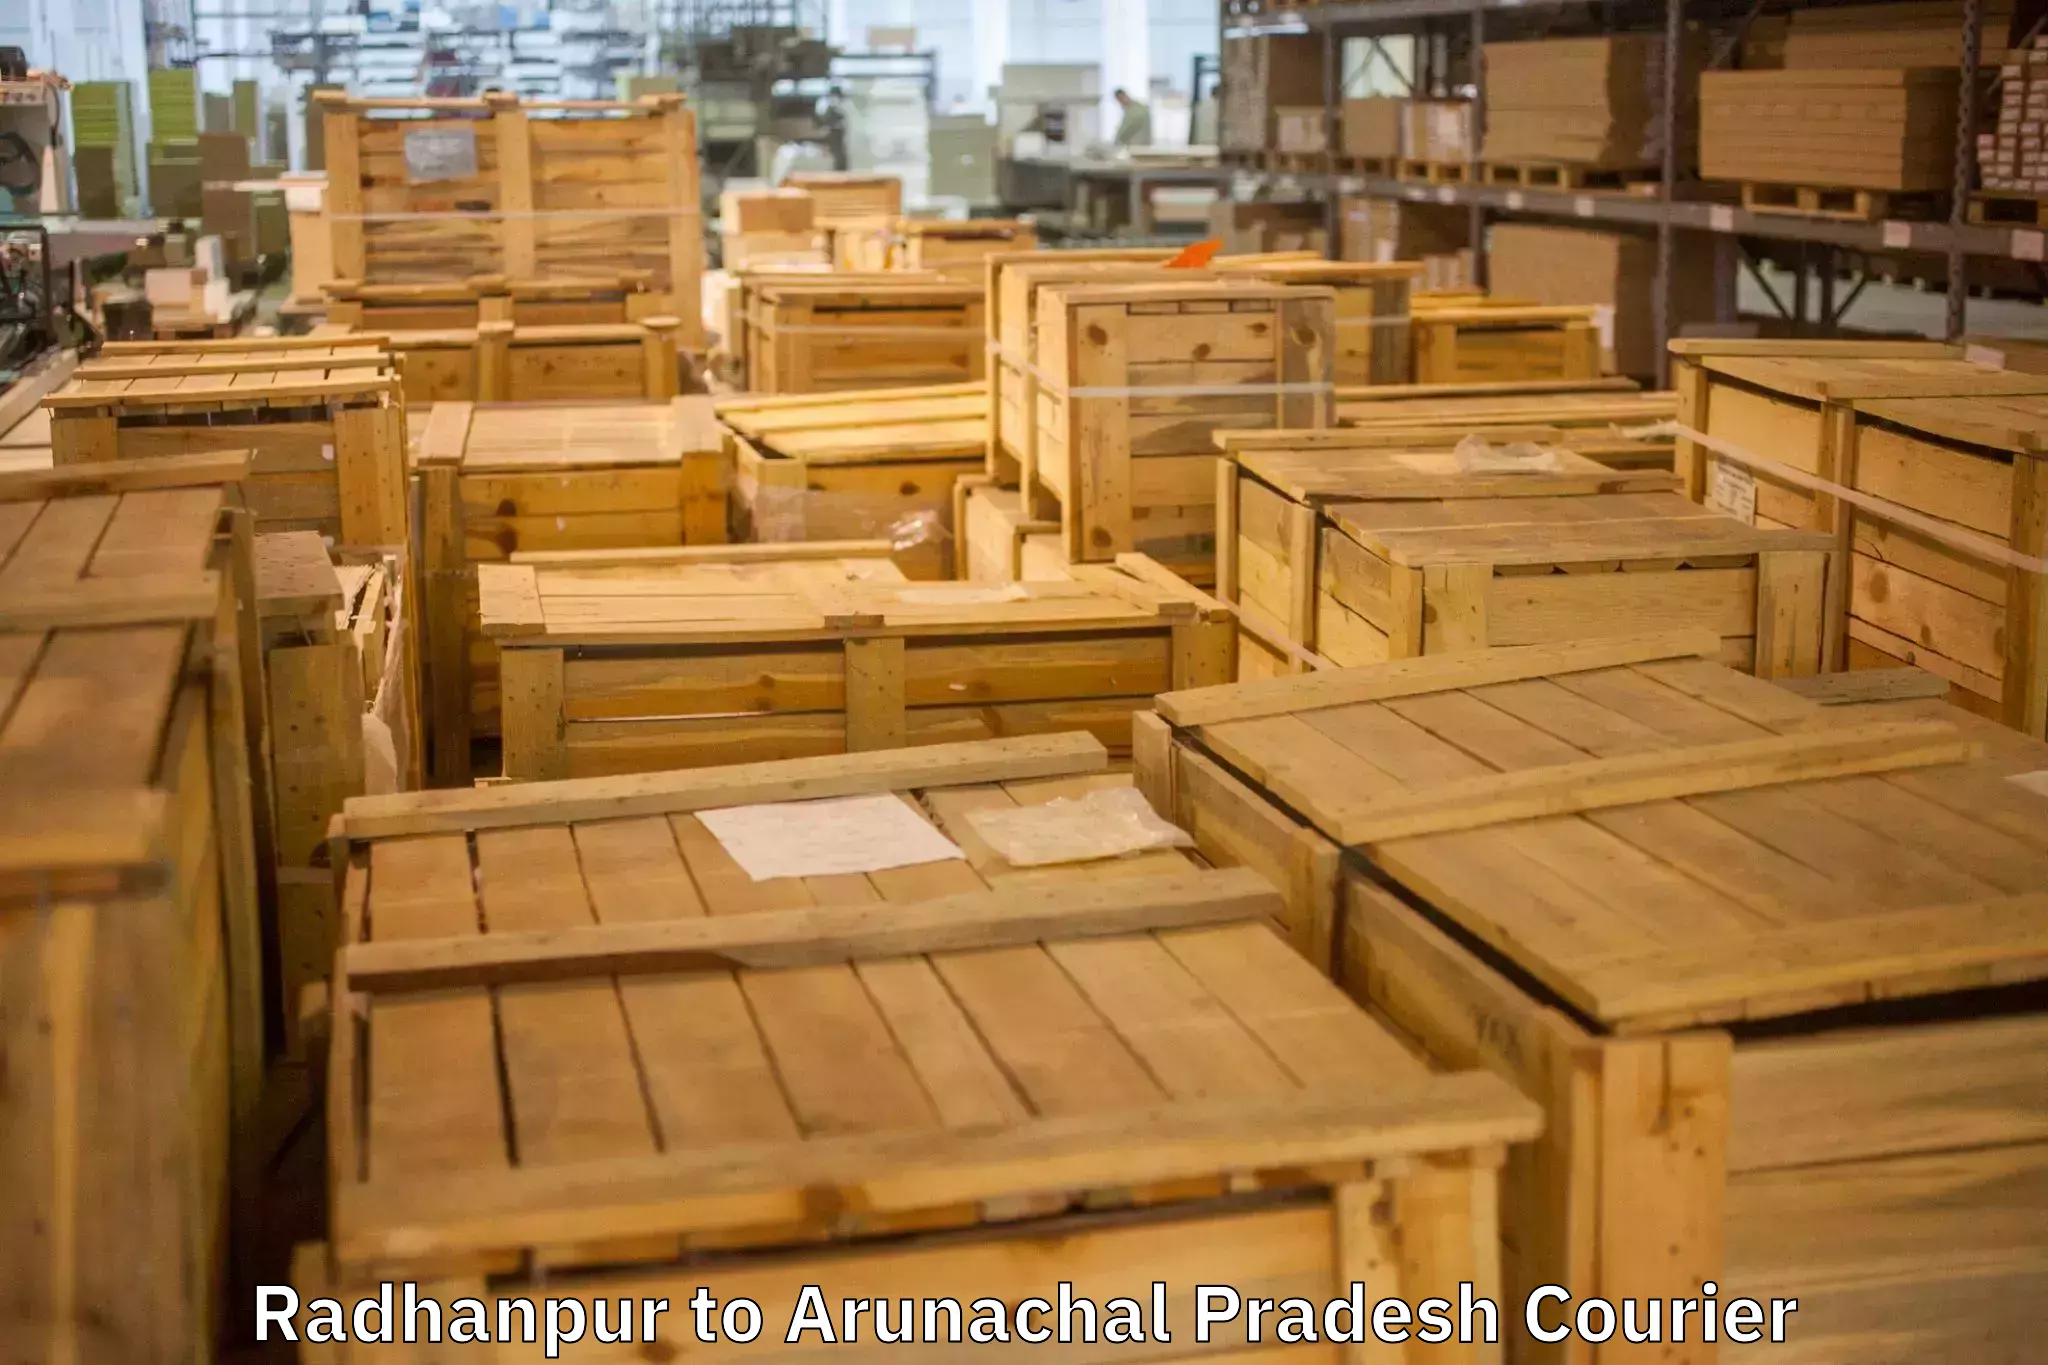 Furniture transport experts Radhanpur to Yazali